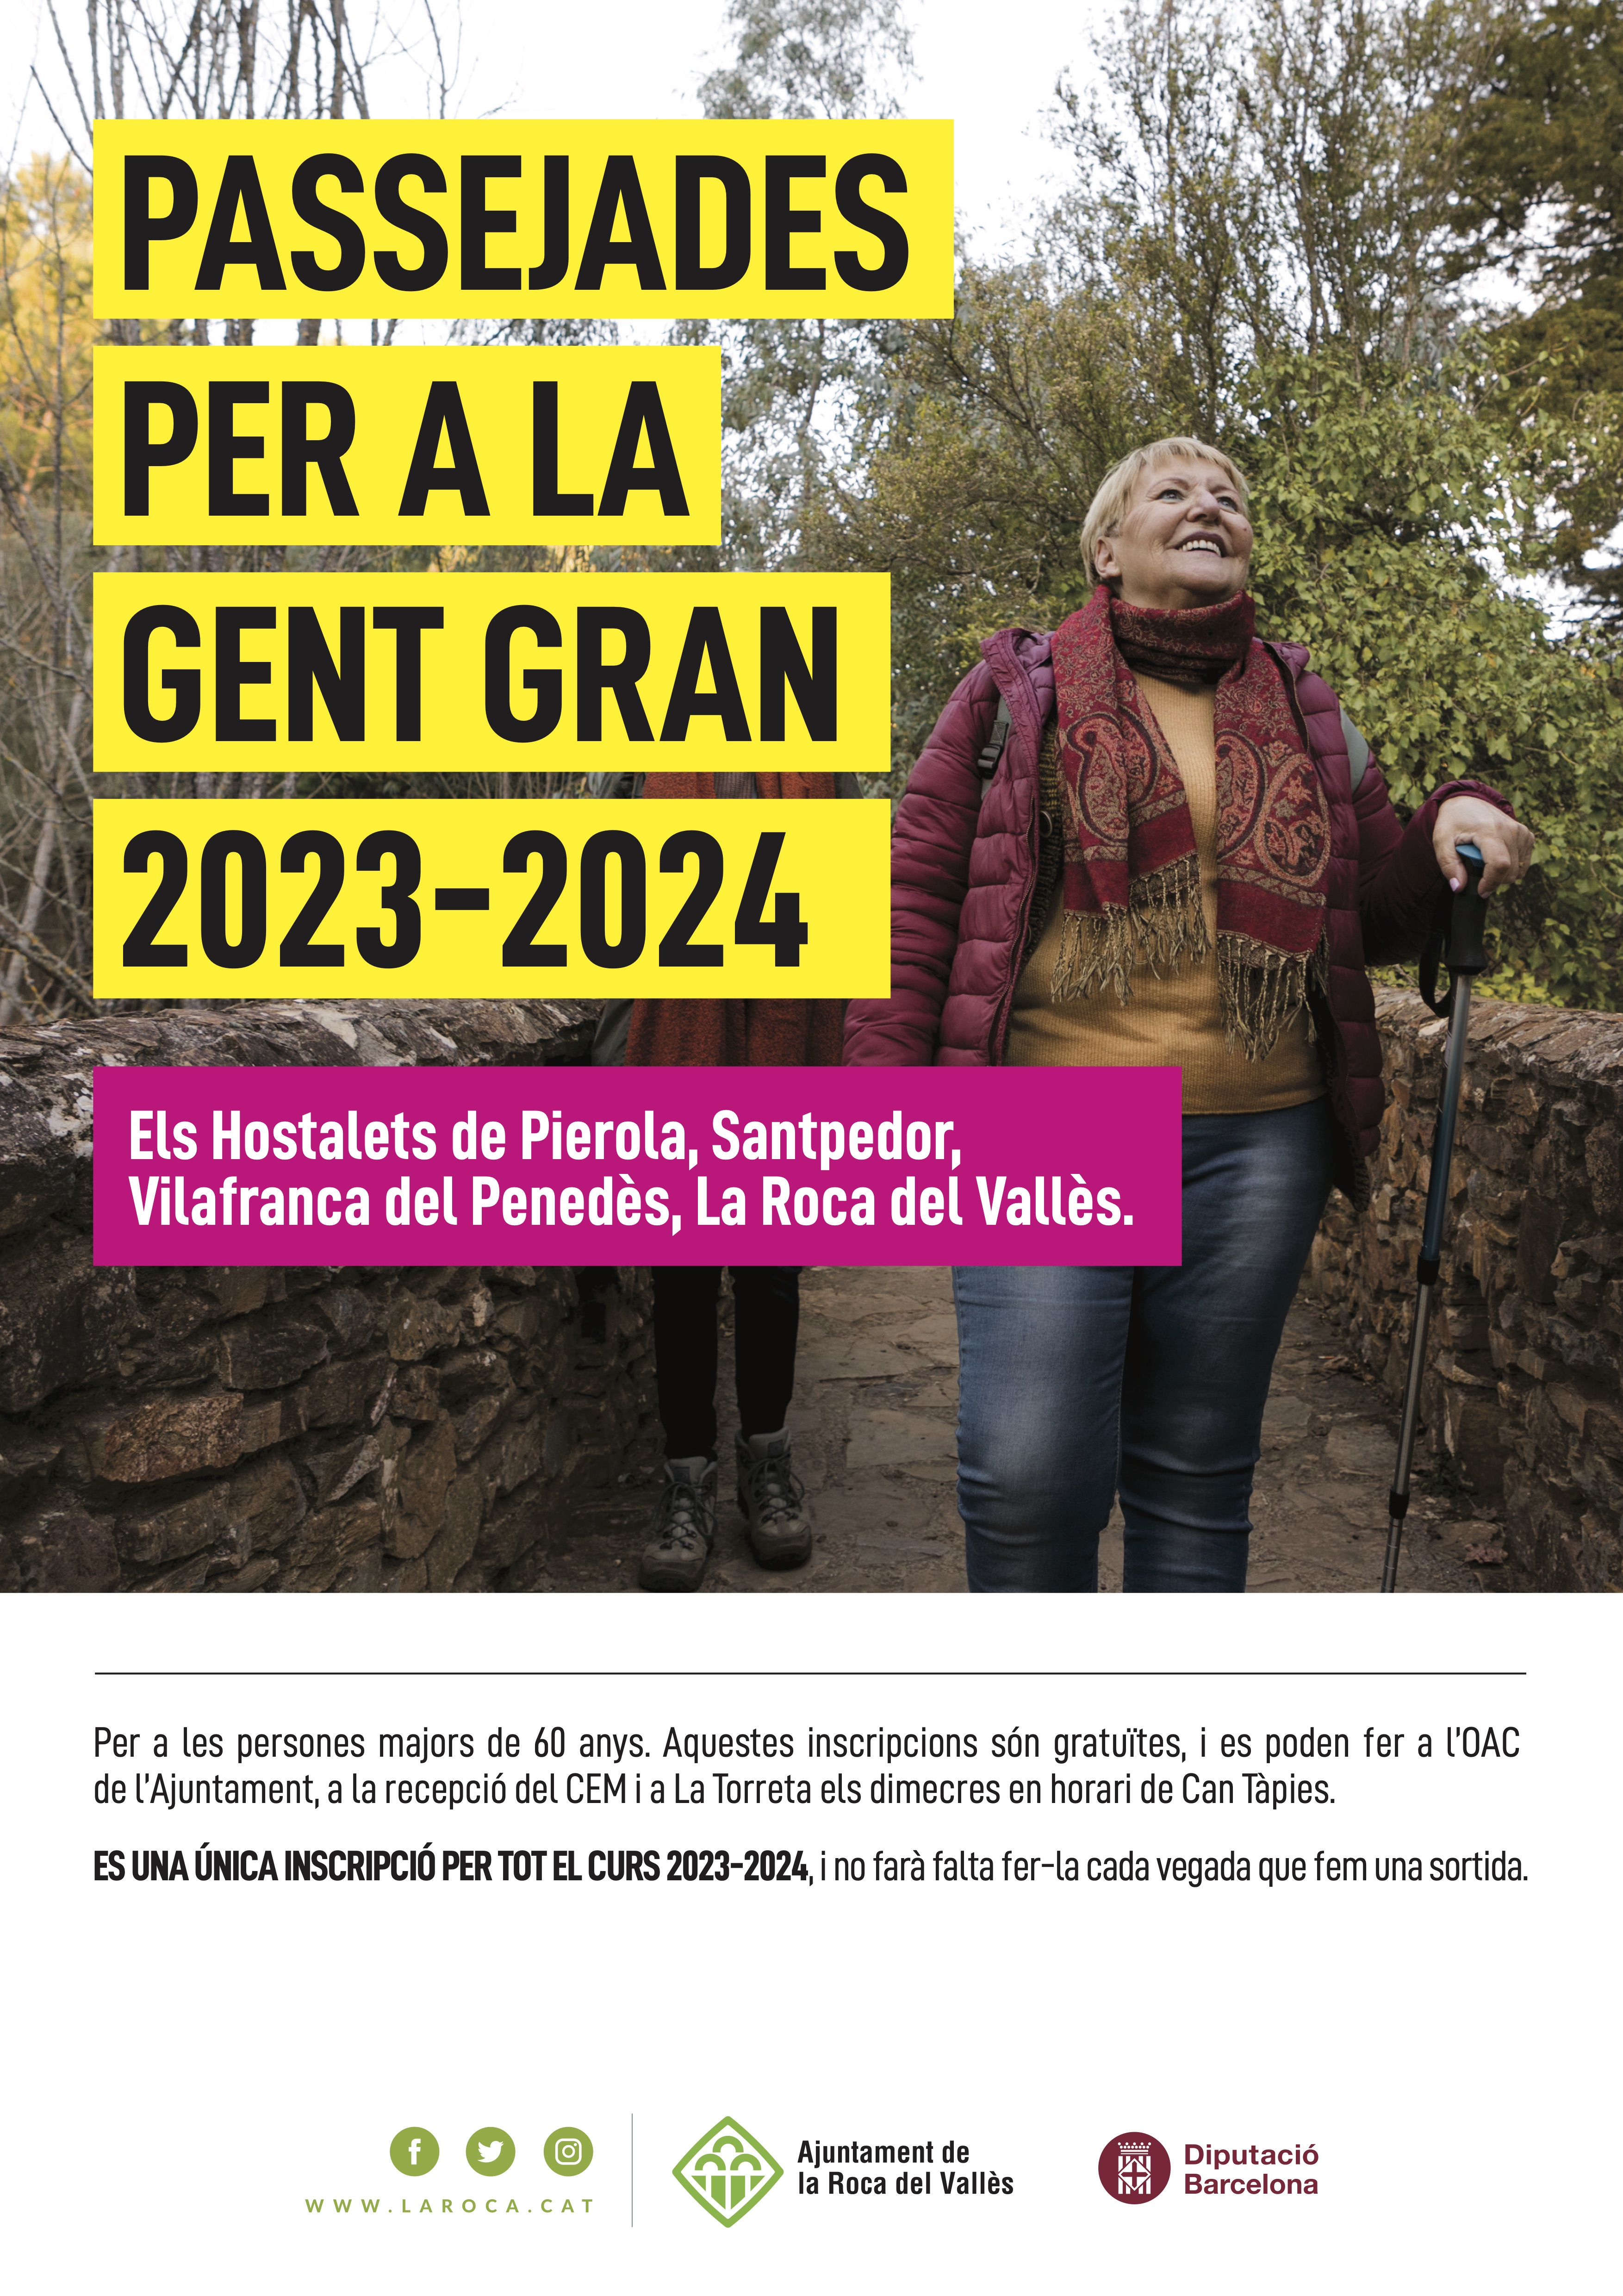 Caminada per a Gent Gran: La Roca del Vallès